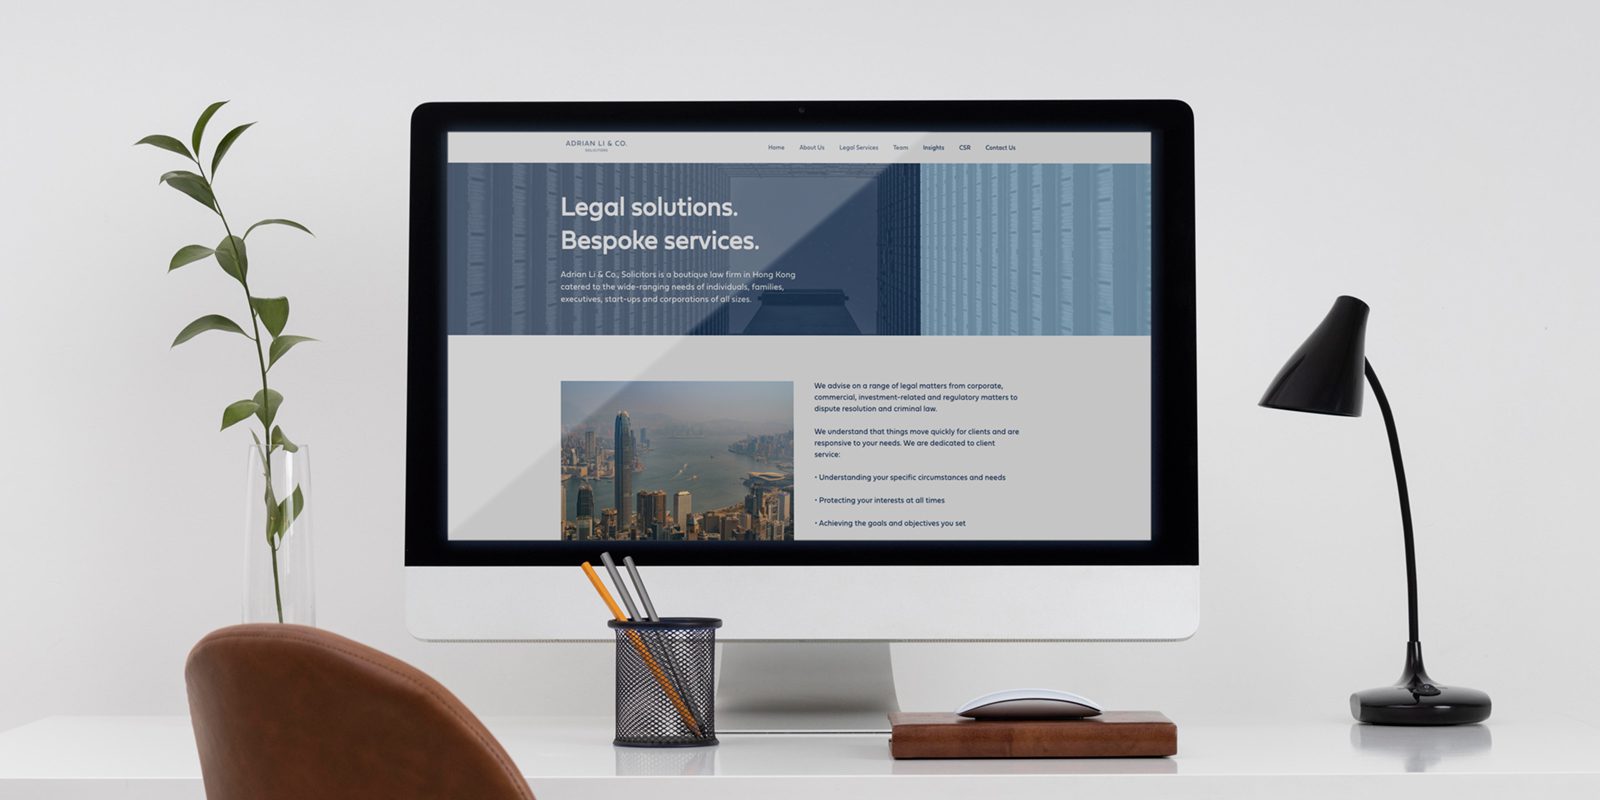 Adrian Li & Co. Solicitors website shown on desktop